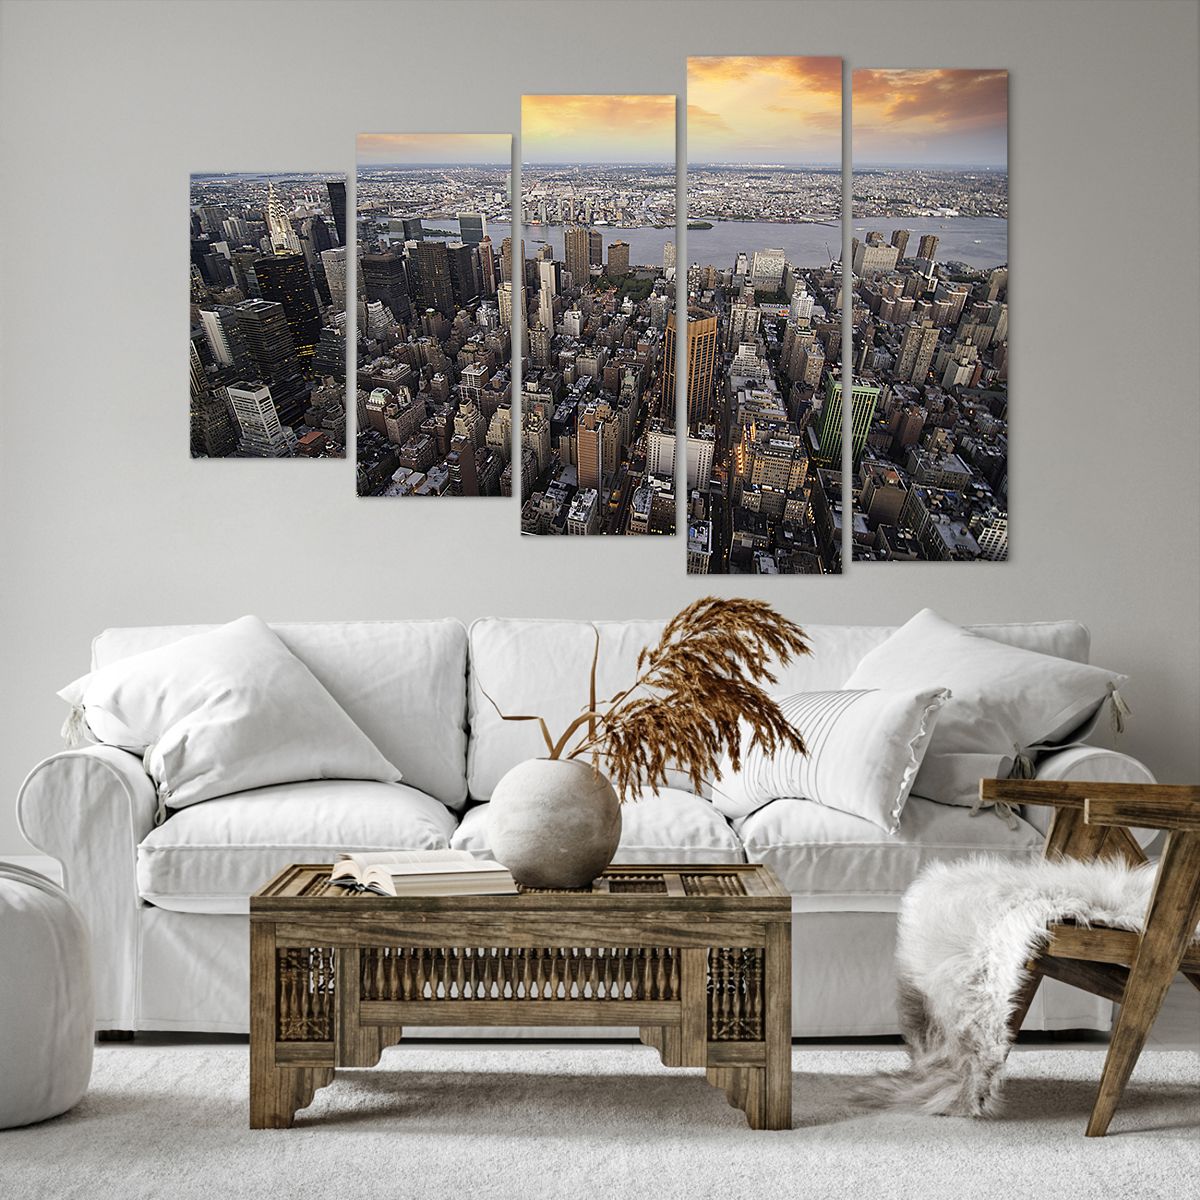 Bild auf Leinwand Stadt, Bild auf Leinwand New York, Bild auf Leinwand Manhattan, Bild auf Leinwand Die Architektur, Bild auf Leinwand Metropole